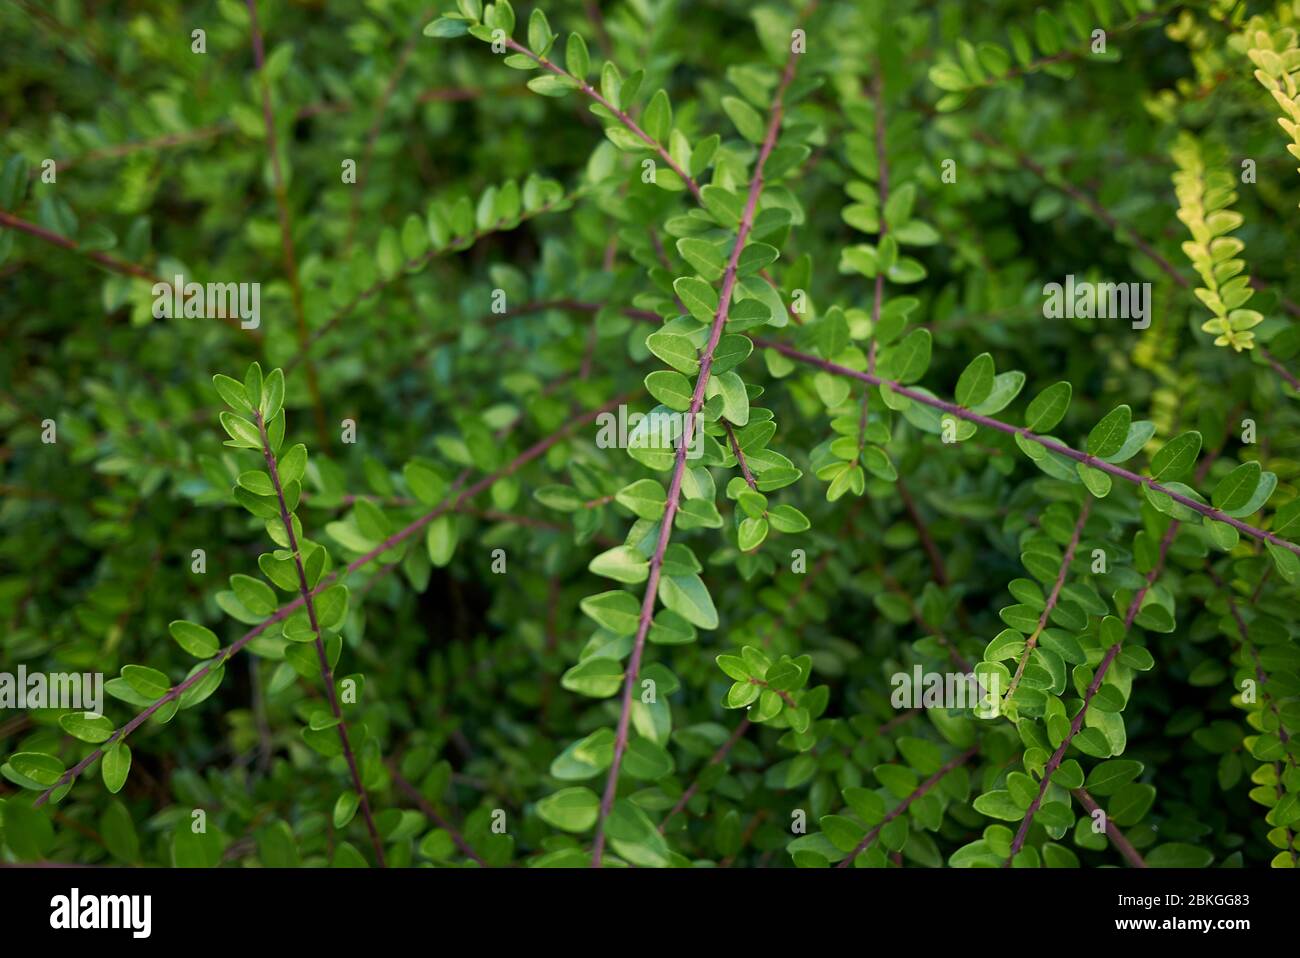 Lonicera nitida evergreen shrub Stock Photo